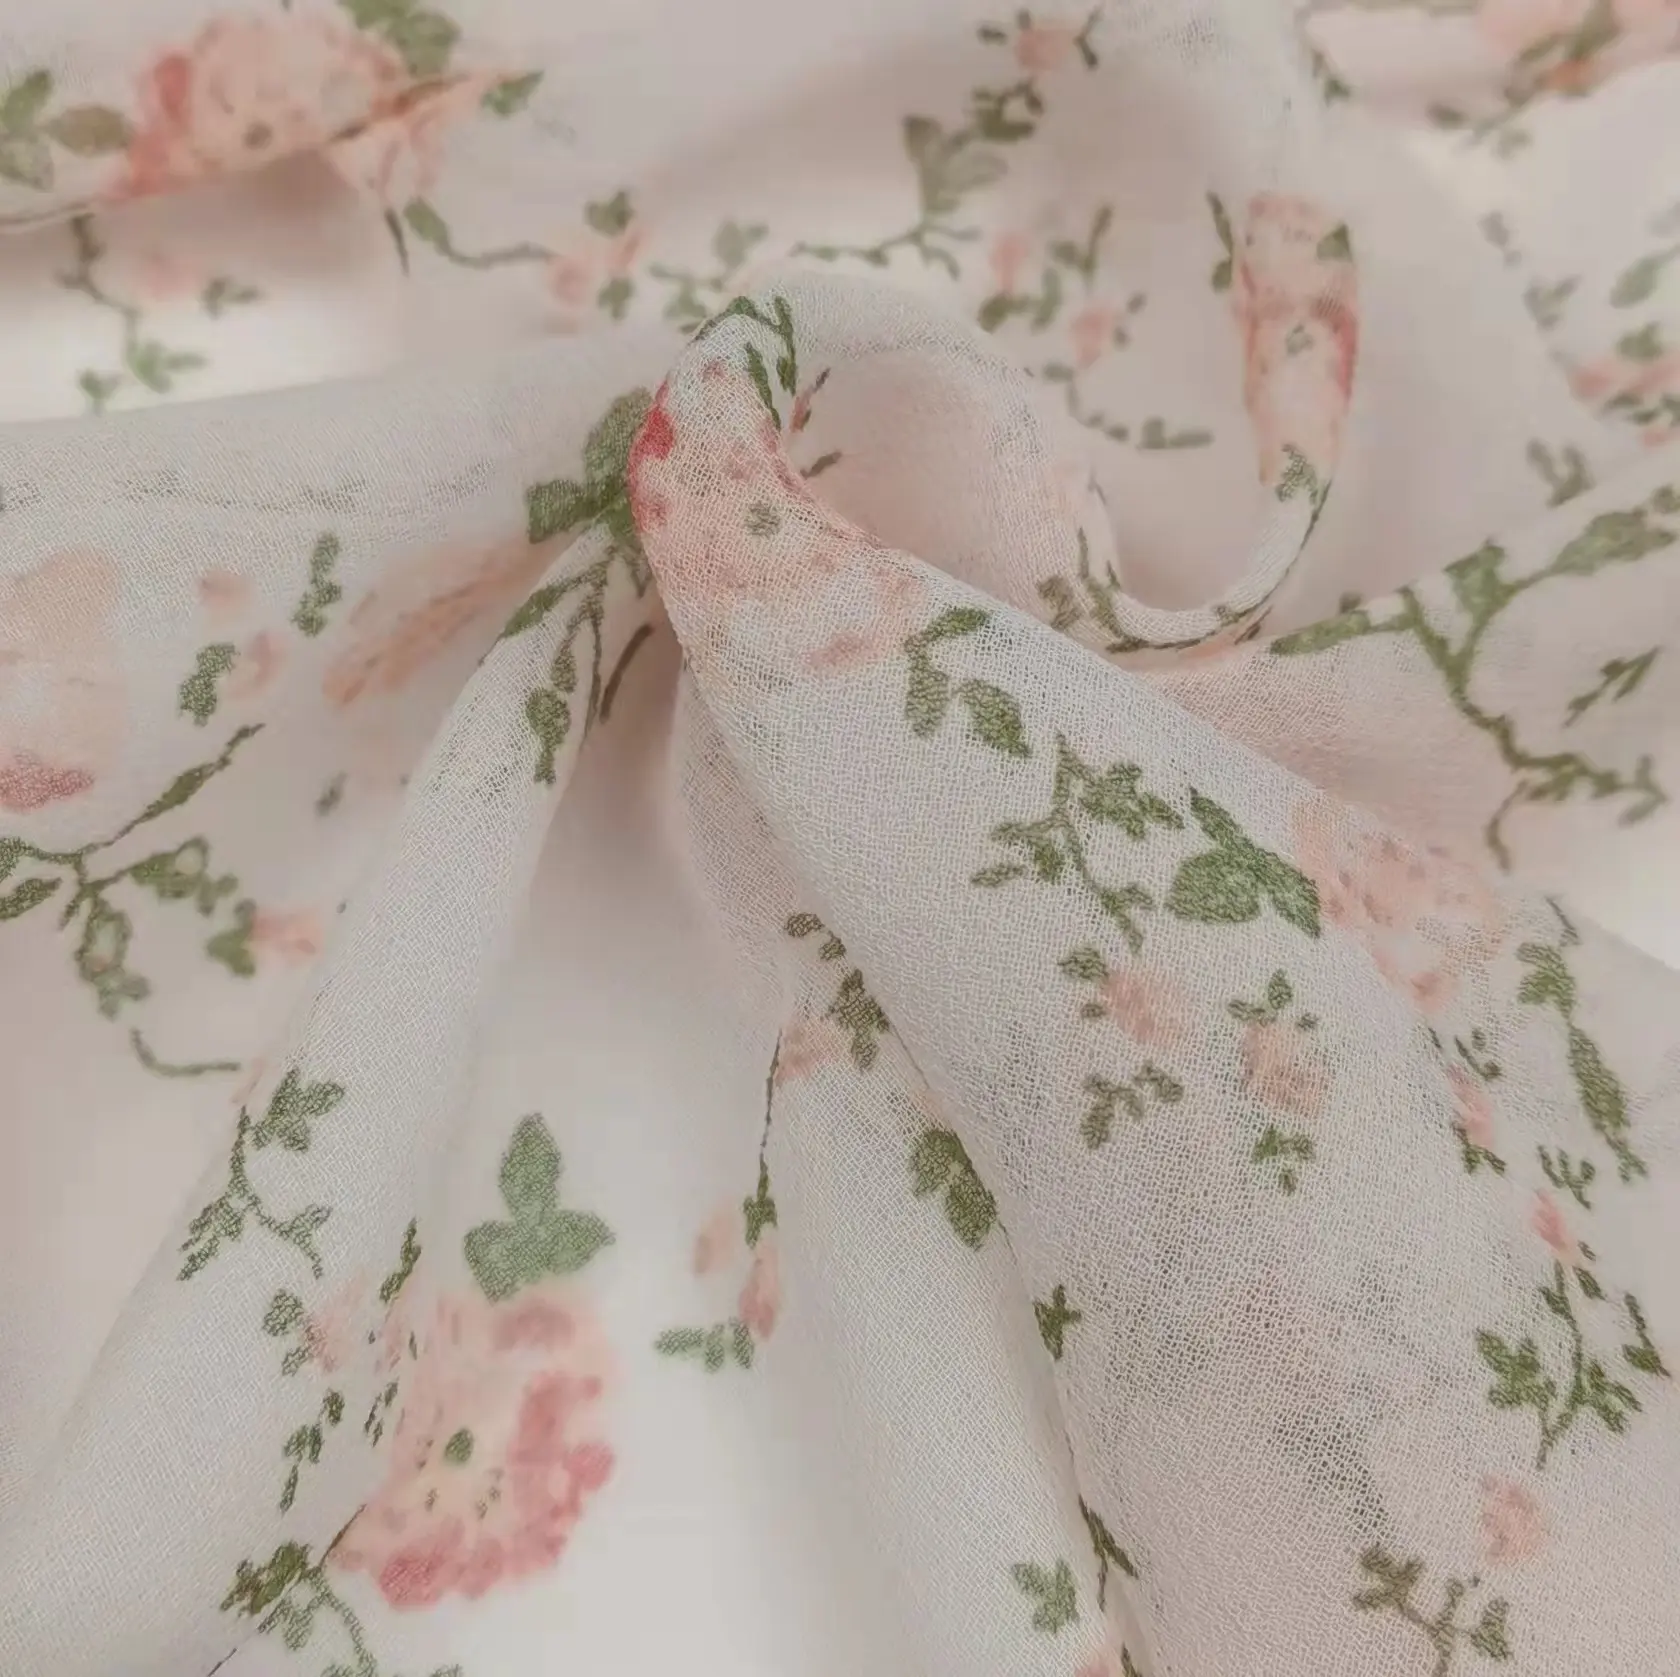 100% Polyester çiçek baskı kompozit ipek şifon kumaş dokuma desen tasarımı için kız çocuk elbiseleri etekler yoğun 20D iplik sayısı